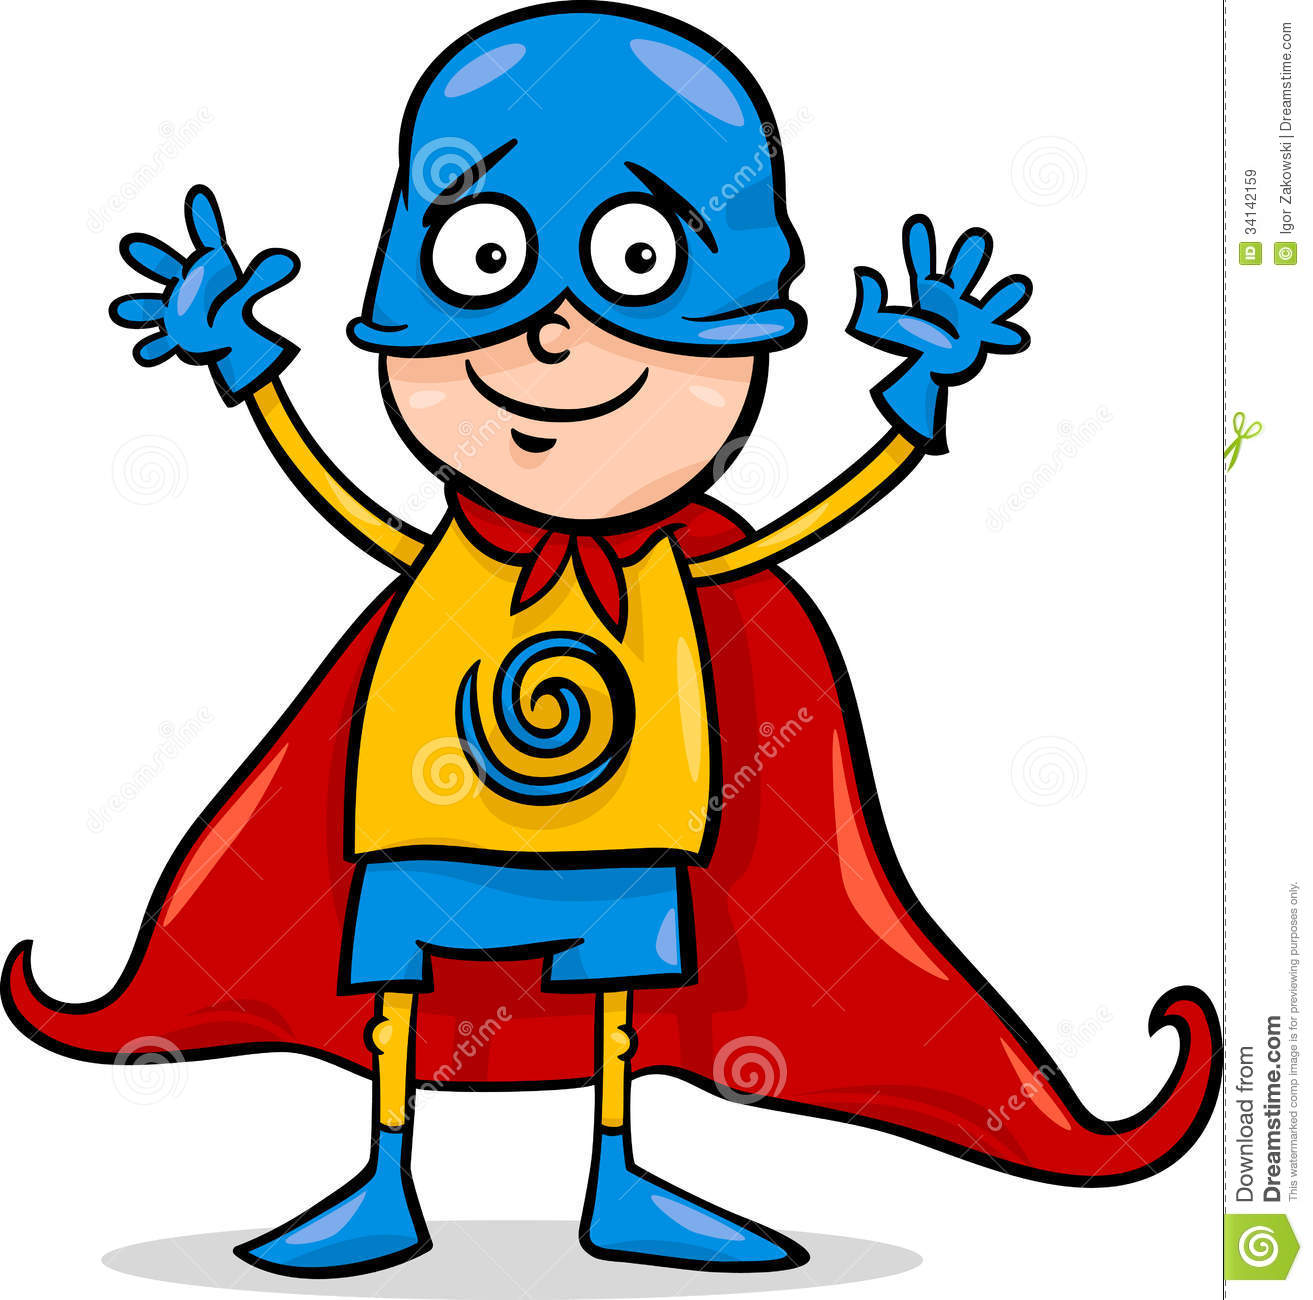 Cartoon Illustration Of Cute Little Boy In Superhero Costume For Fancy